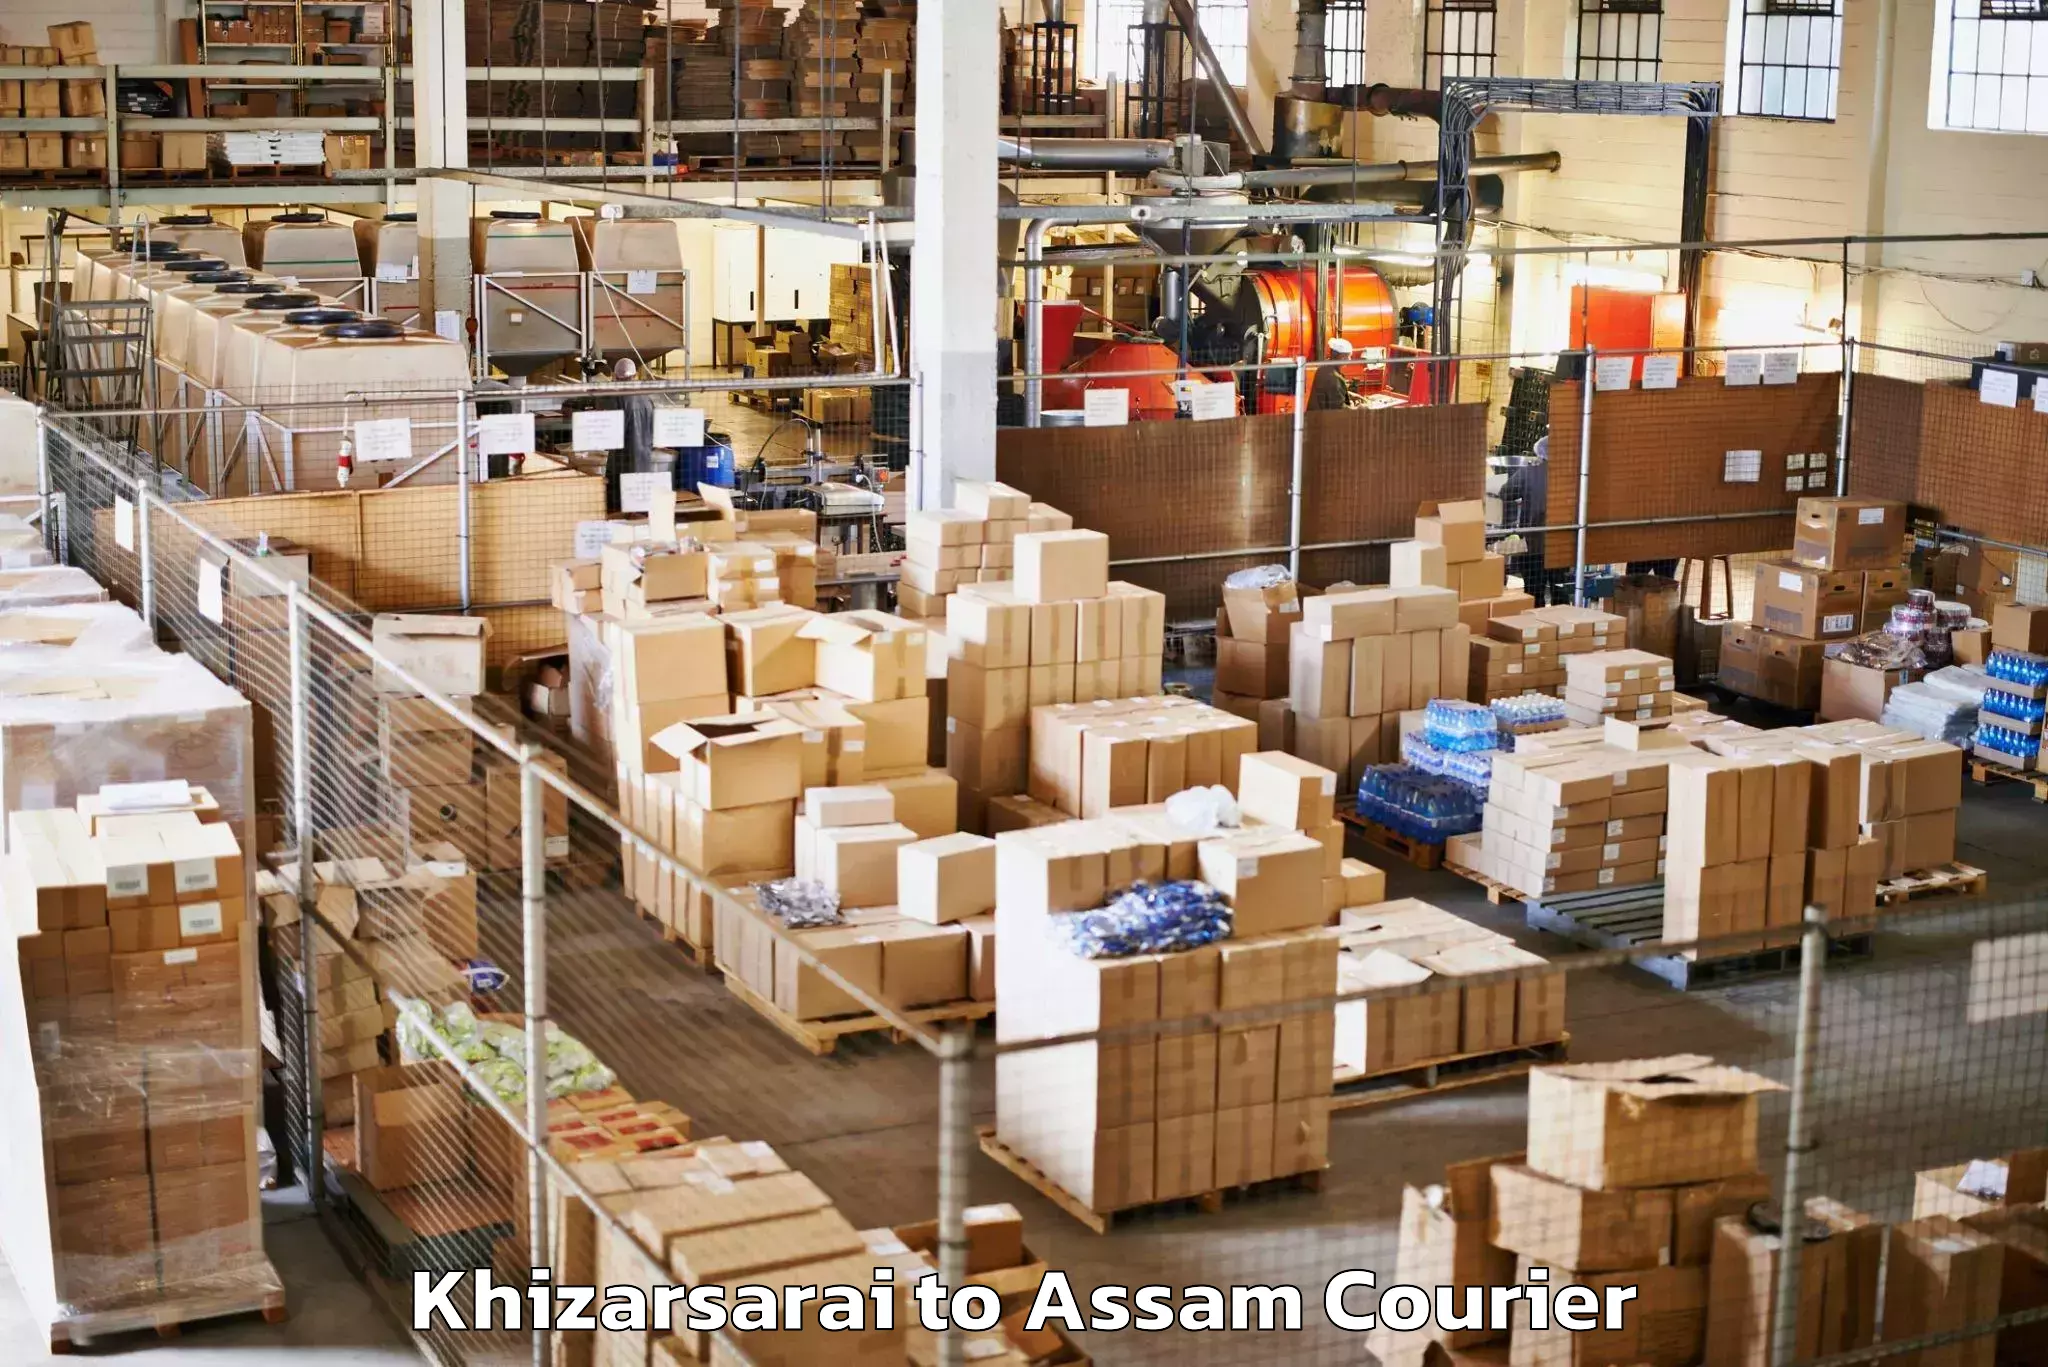 Reliable luggage courier Khizarsarai to Assam